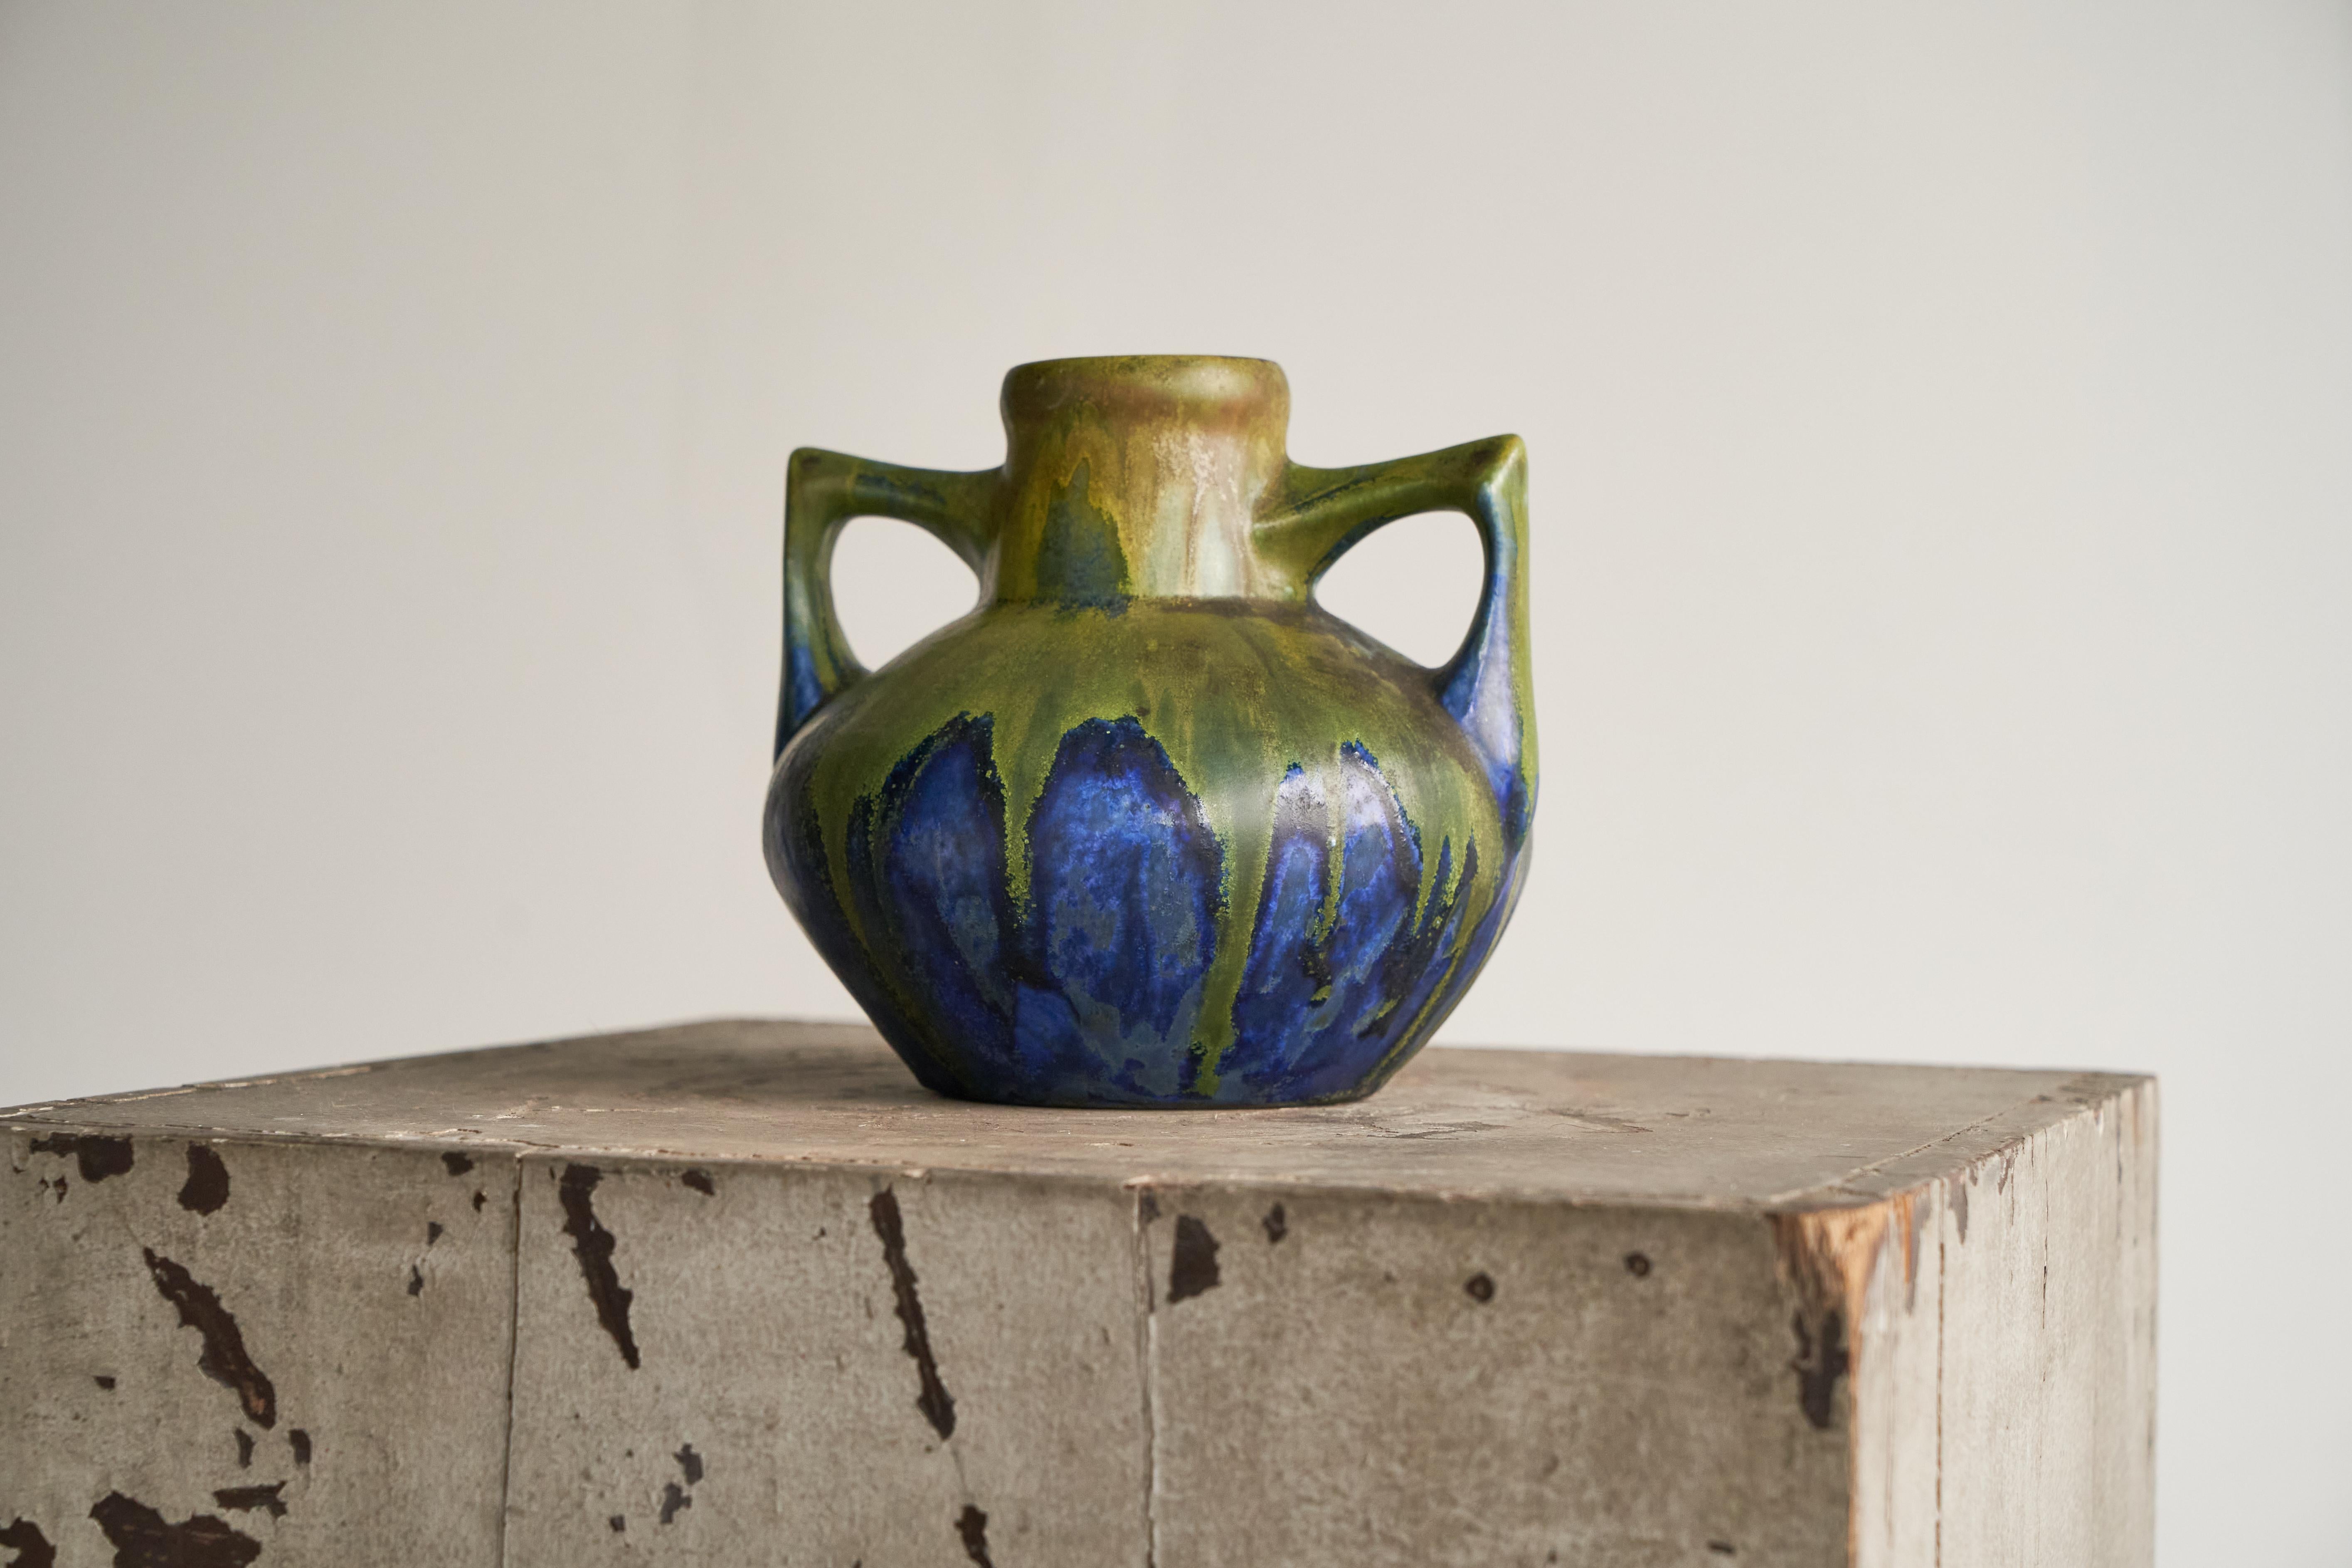 Ce magnifique vase Art déco est une pièce rare de l'artiste céramiste français Gilbert Méténier (France, 1844 - 1922).

Le vase est de bonne taille et présente deux poignées intéressantes qui se détachent doucement de la forme principale. Les